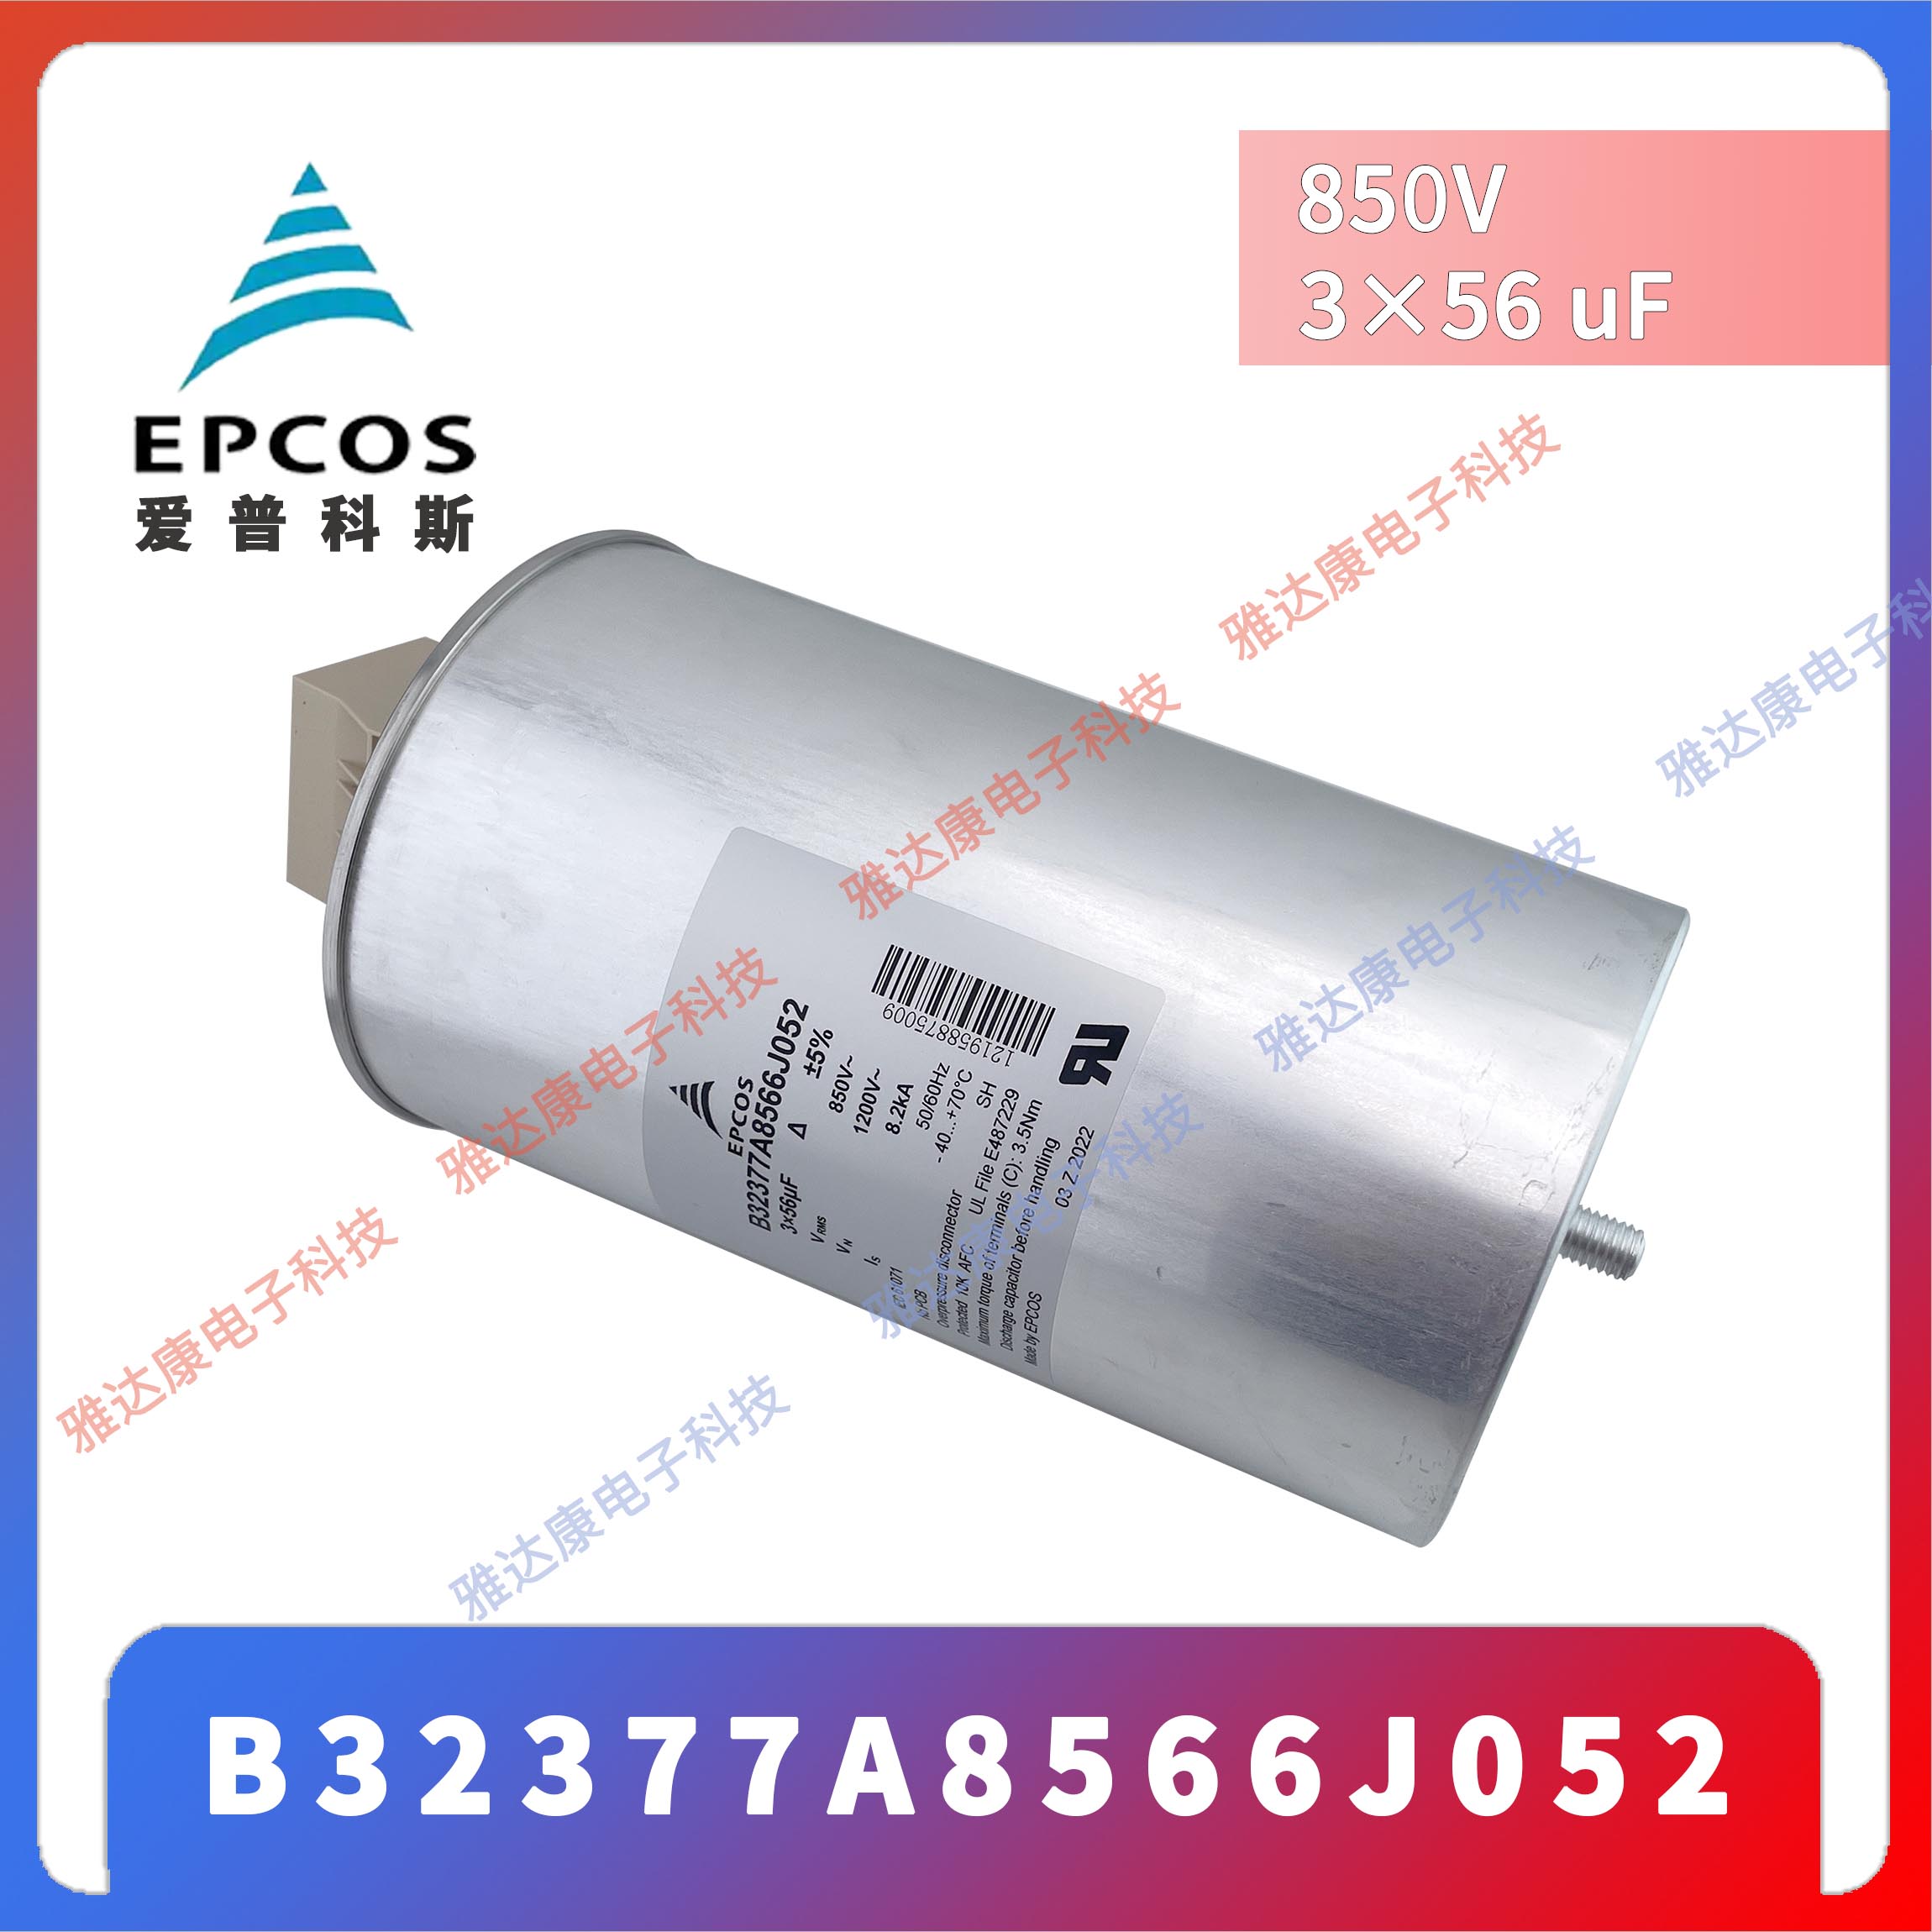 EPCOS电容器薄膜电容 B32377A4137J080 480V680V  3×130uF 116 × 251图片